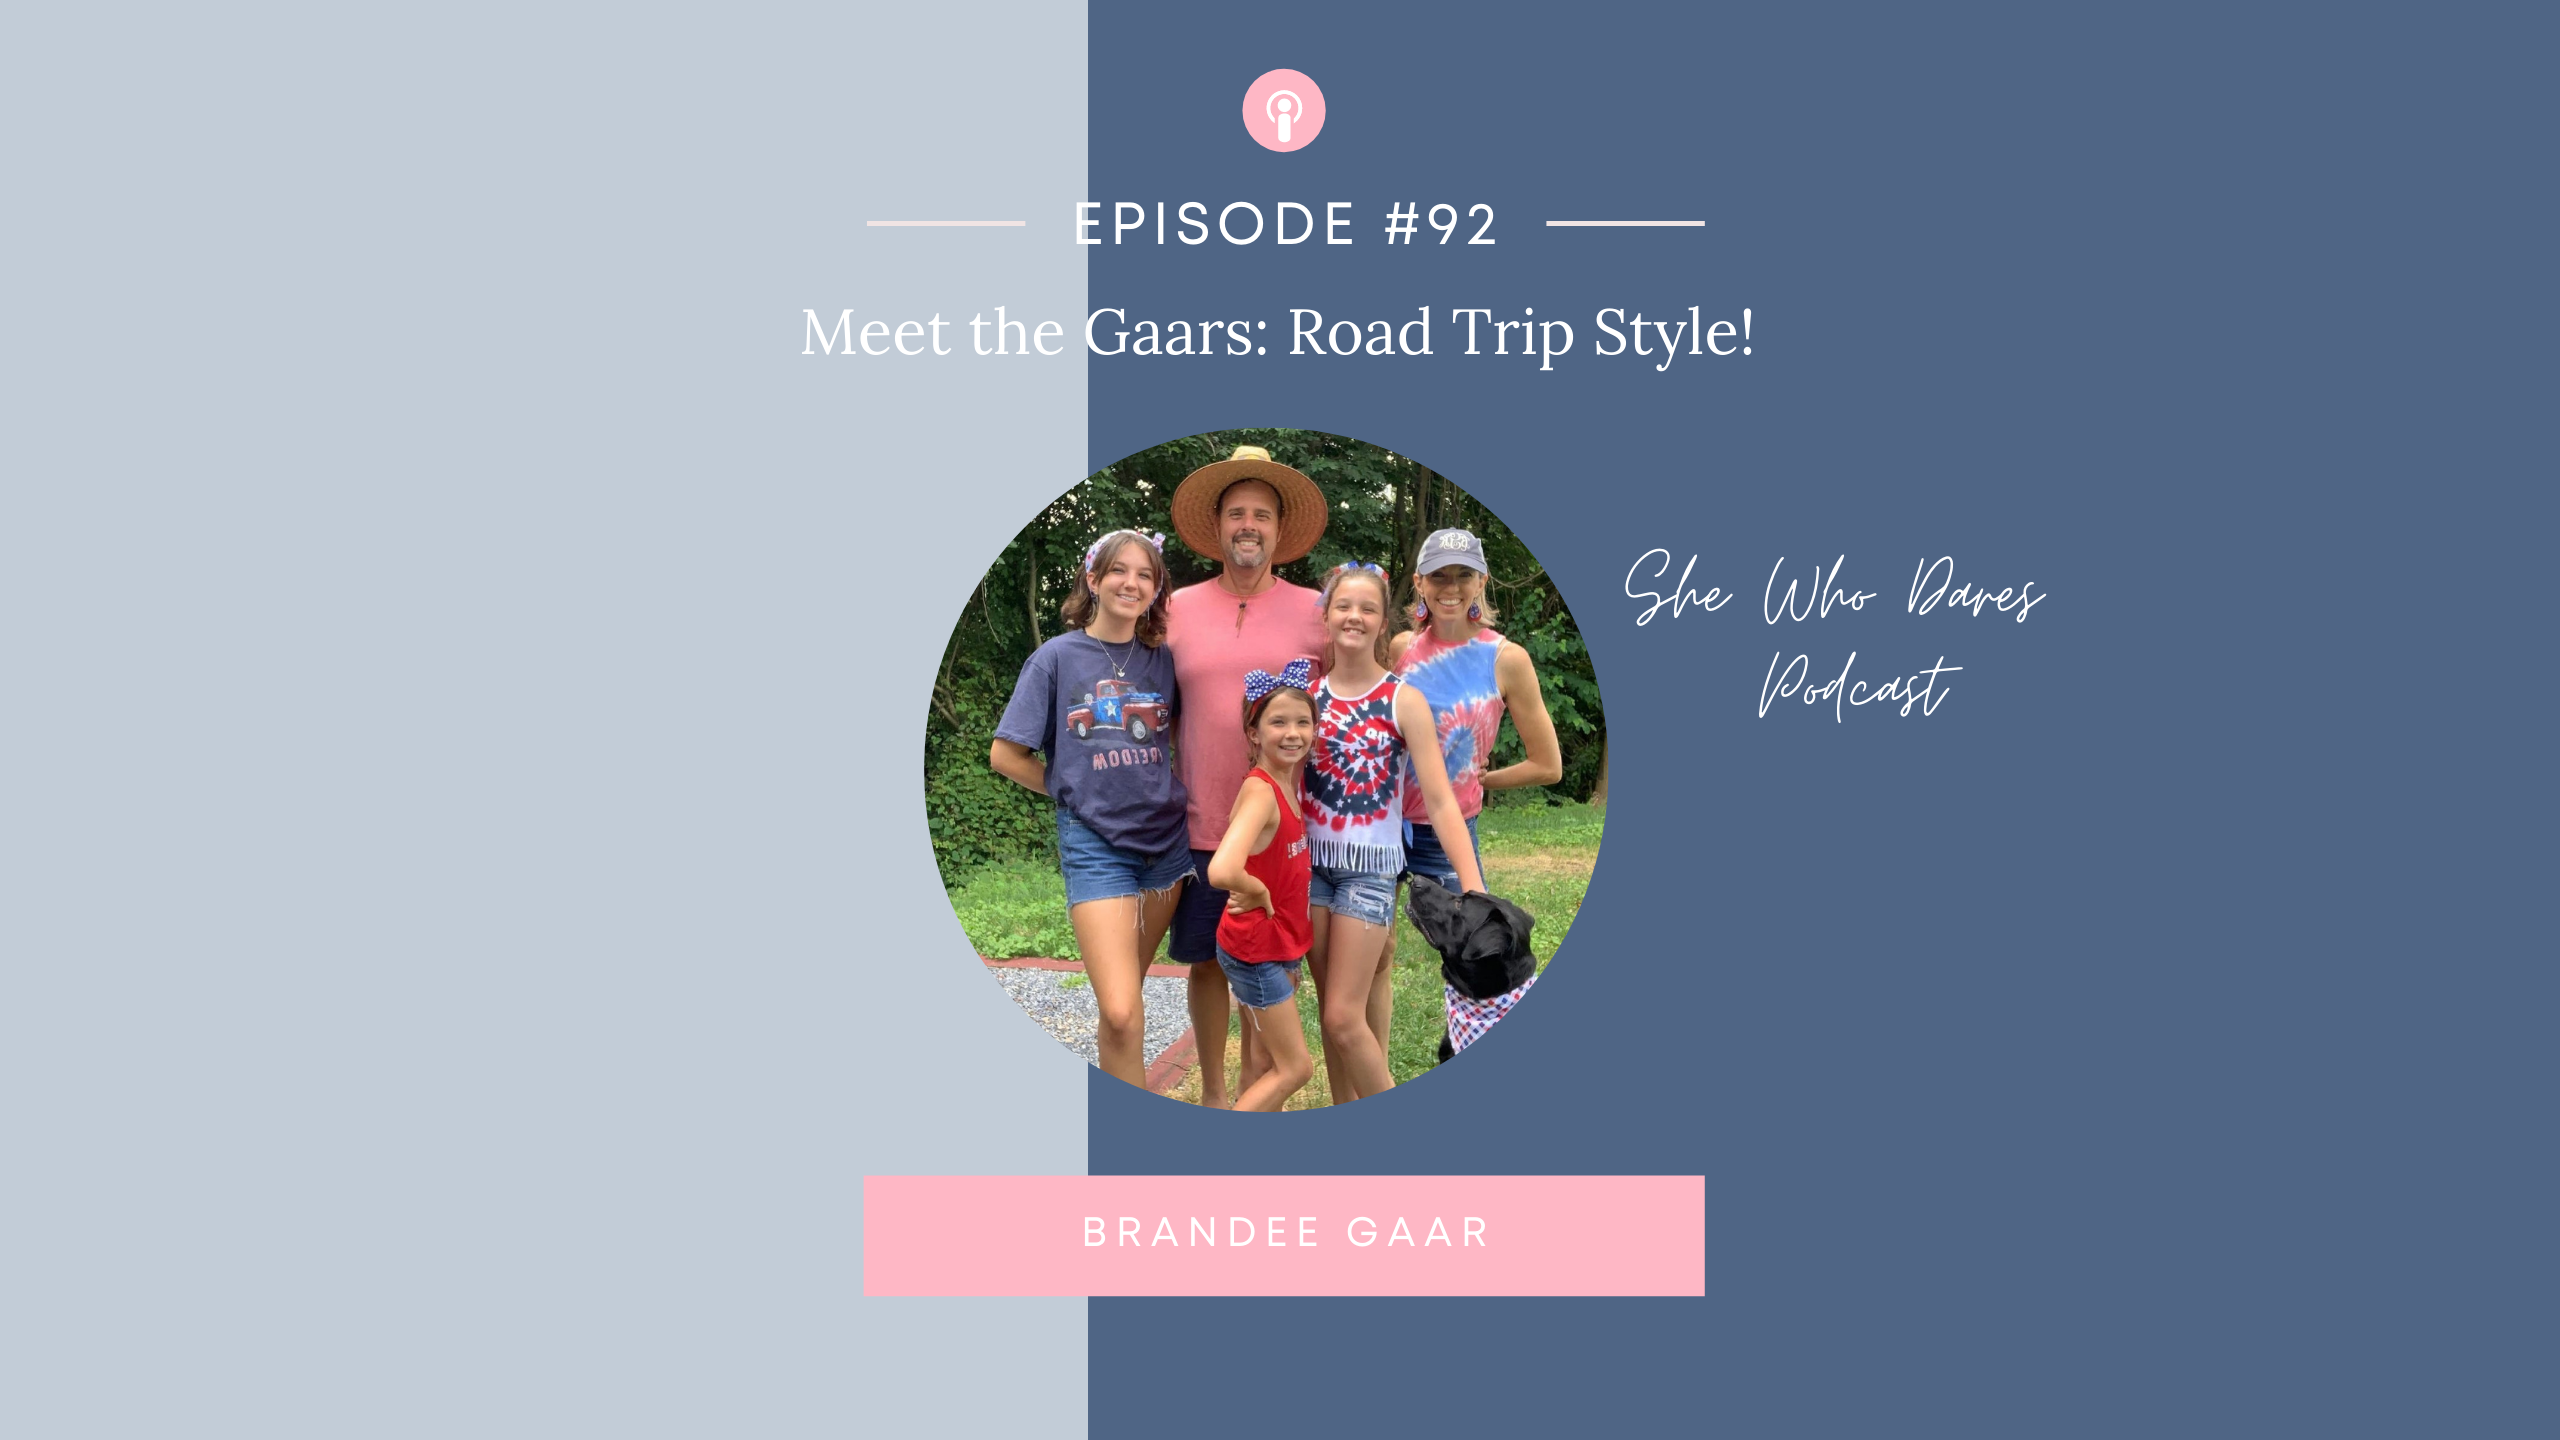 Meet the Gaars: Road Trip Style!